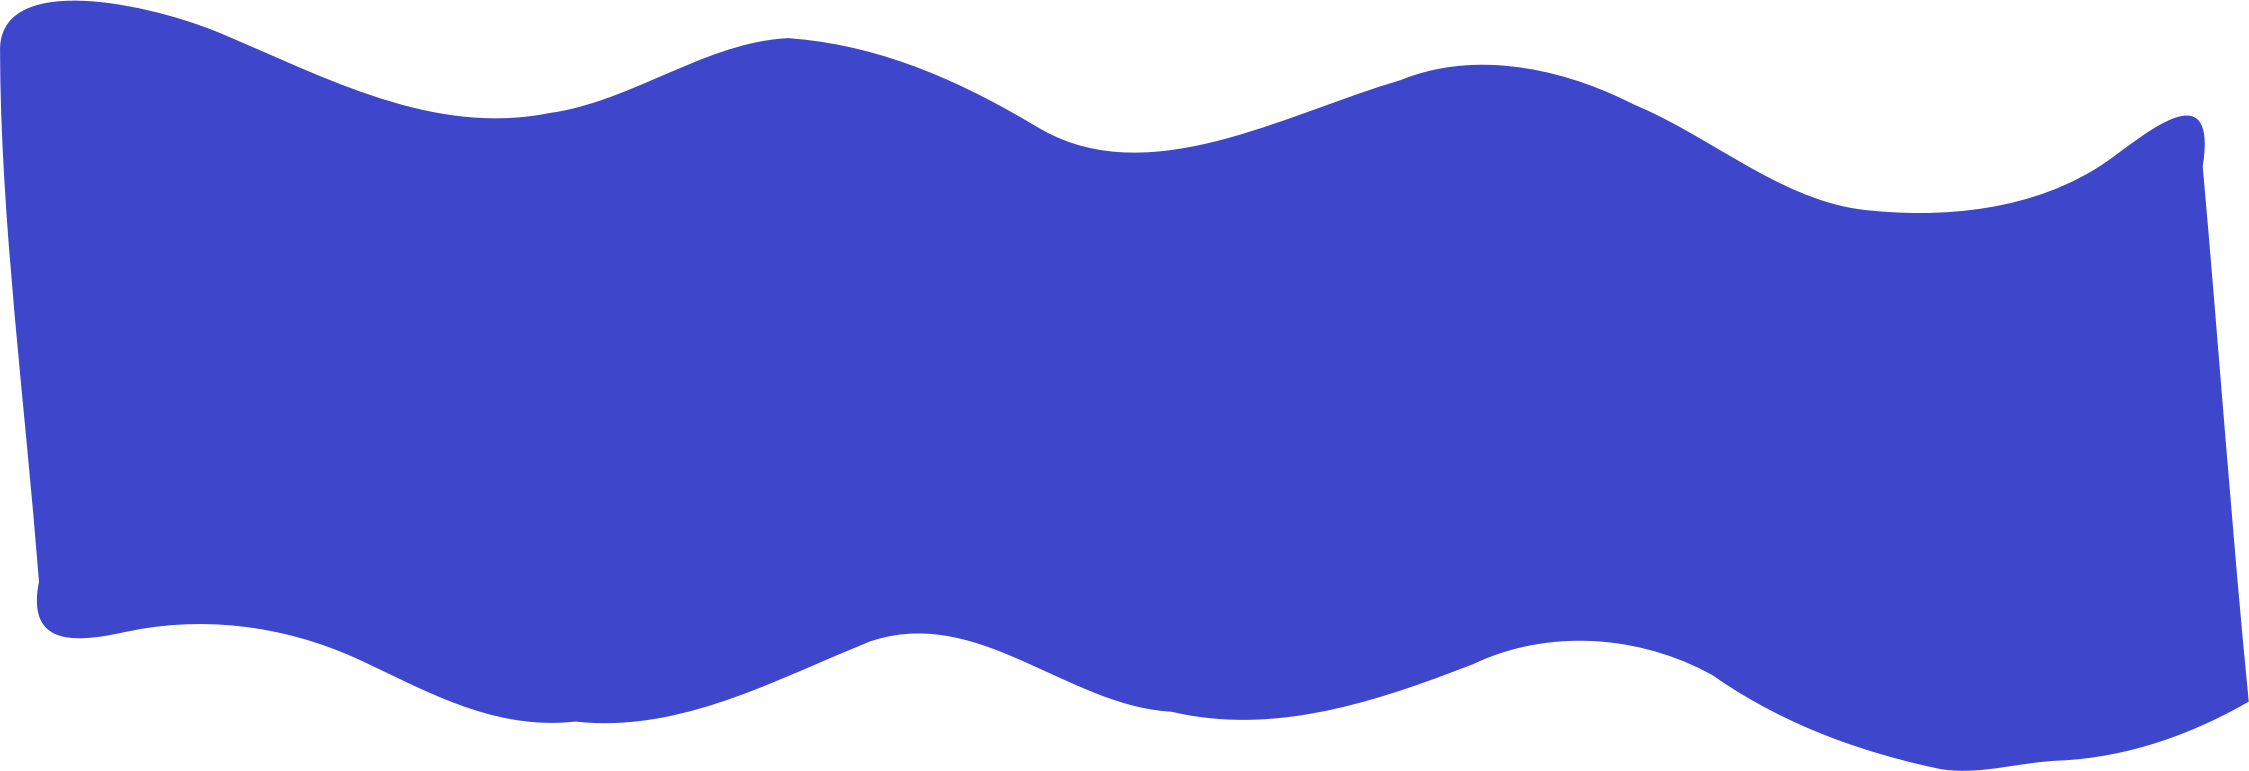 Big Image - Blue Wave Clipart (2249x771)